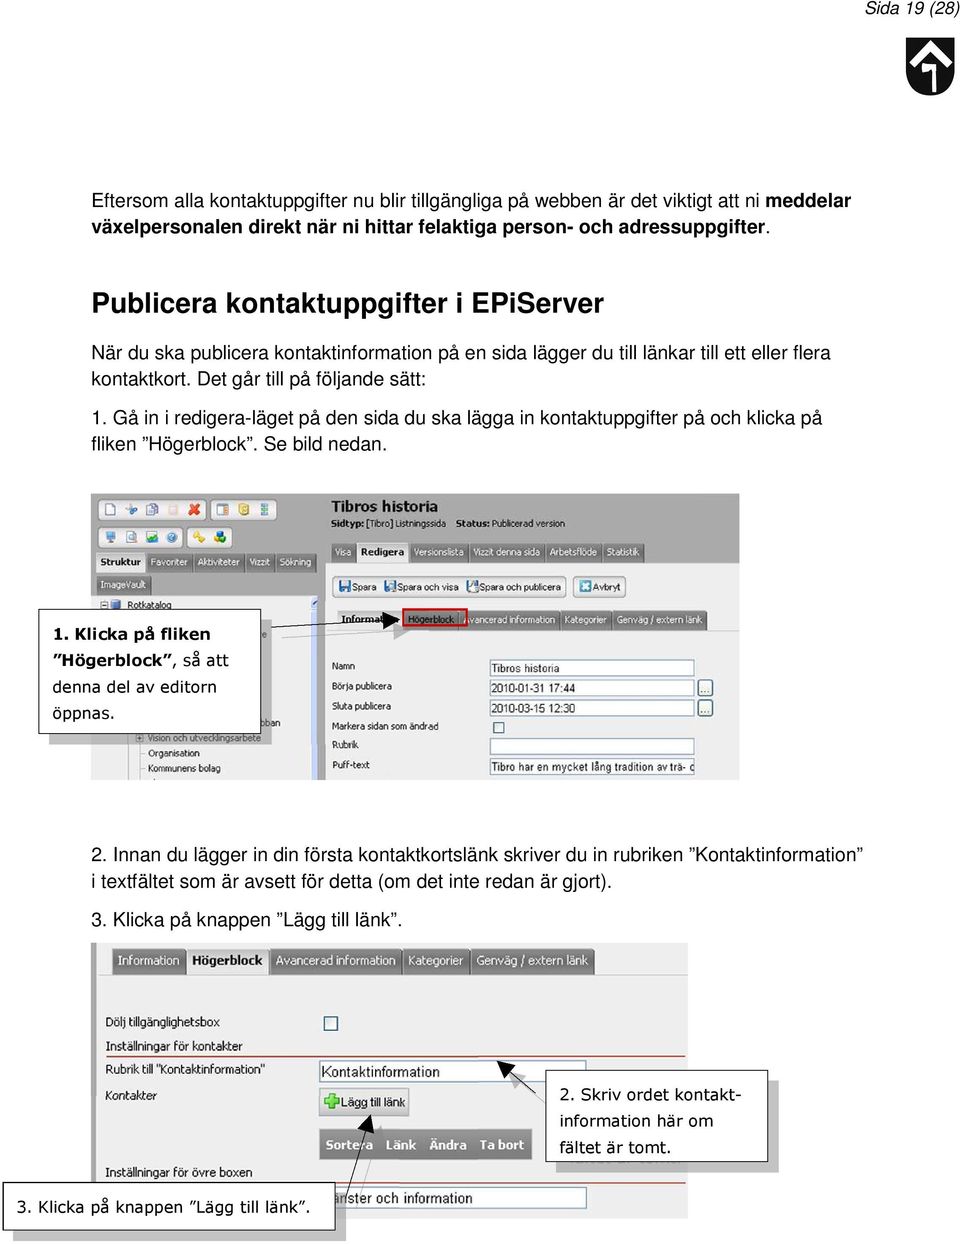 Gå in i redigera-läget på den sida du ska lägga in kontaktuppgifter på och klicka på fliken Högerblock. Se bild nedan. 1. Klicka på fliken Högerblock, så att denna del av editorn öppnas. 2.